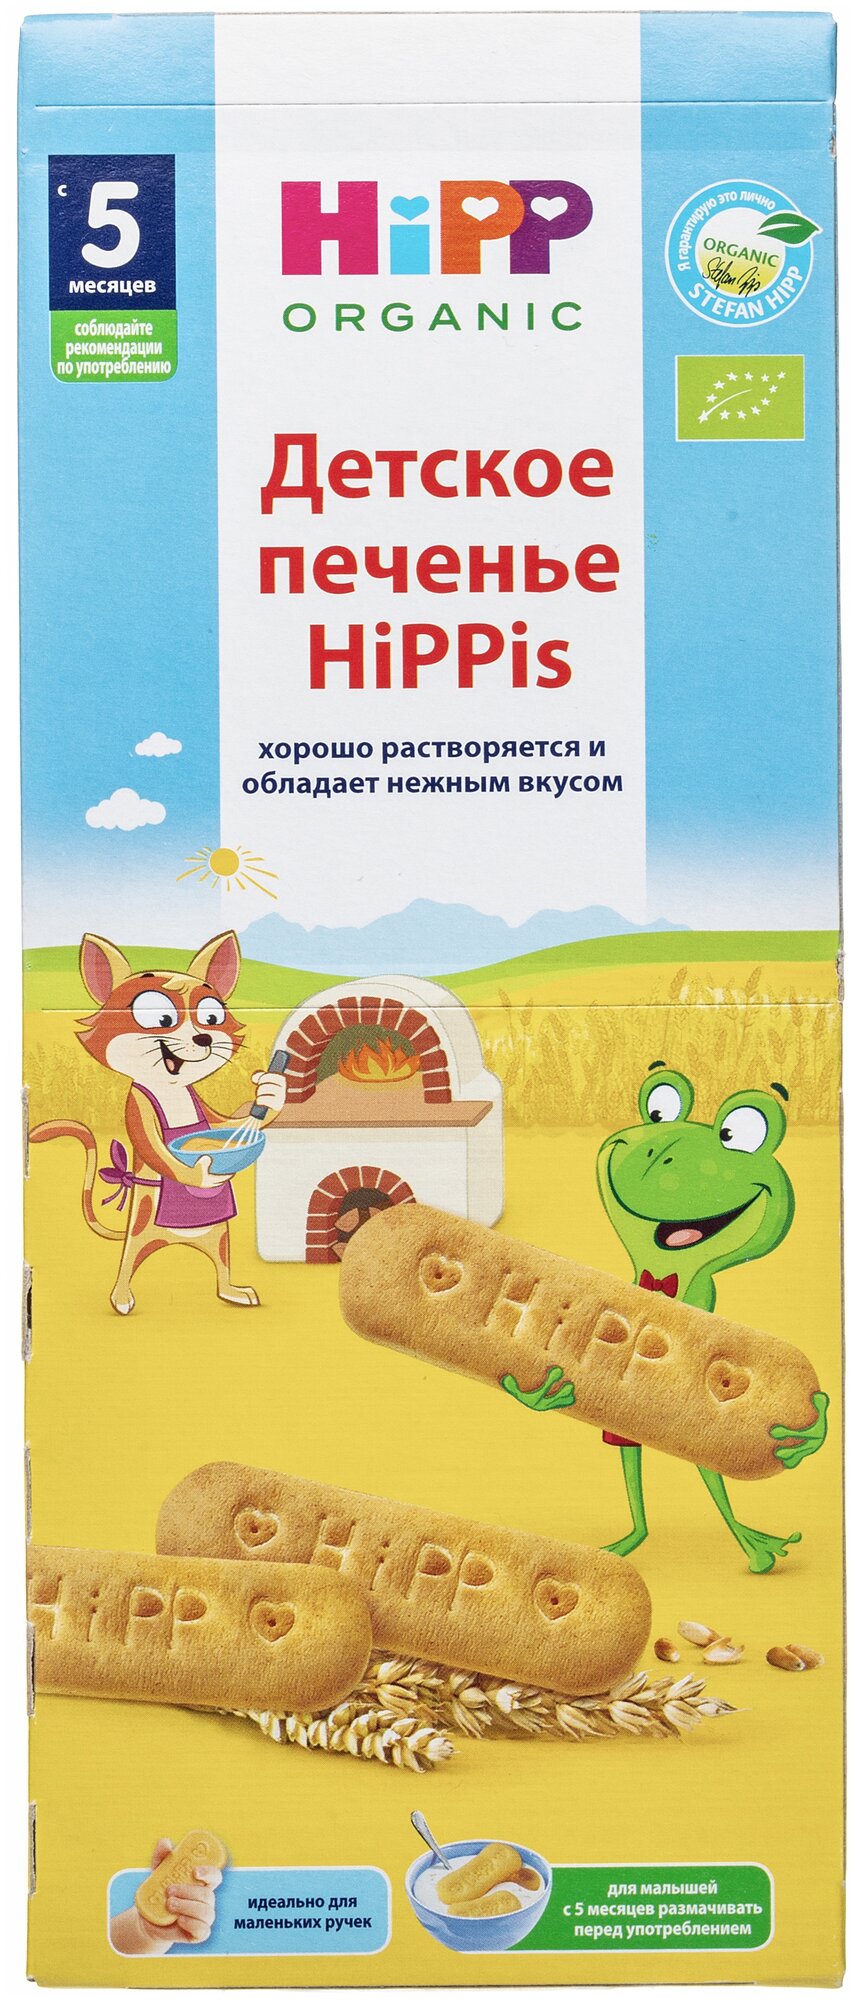 Печенье детское HiPP HiPPis, 180 г - фото №2